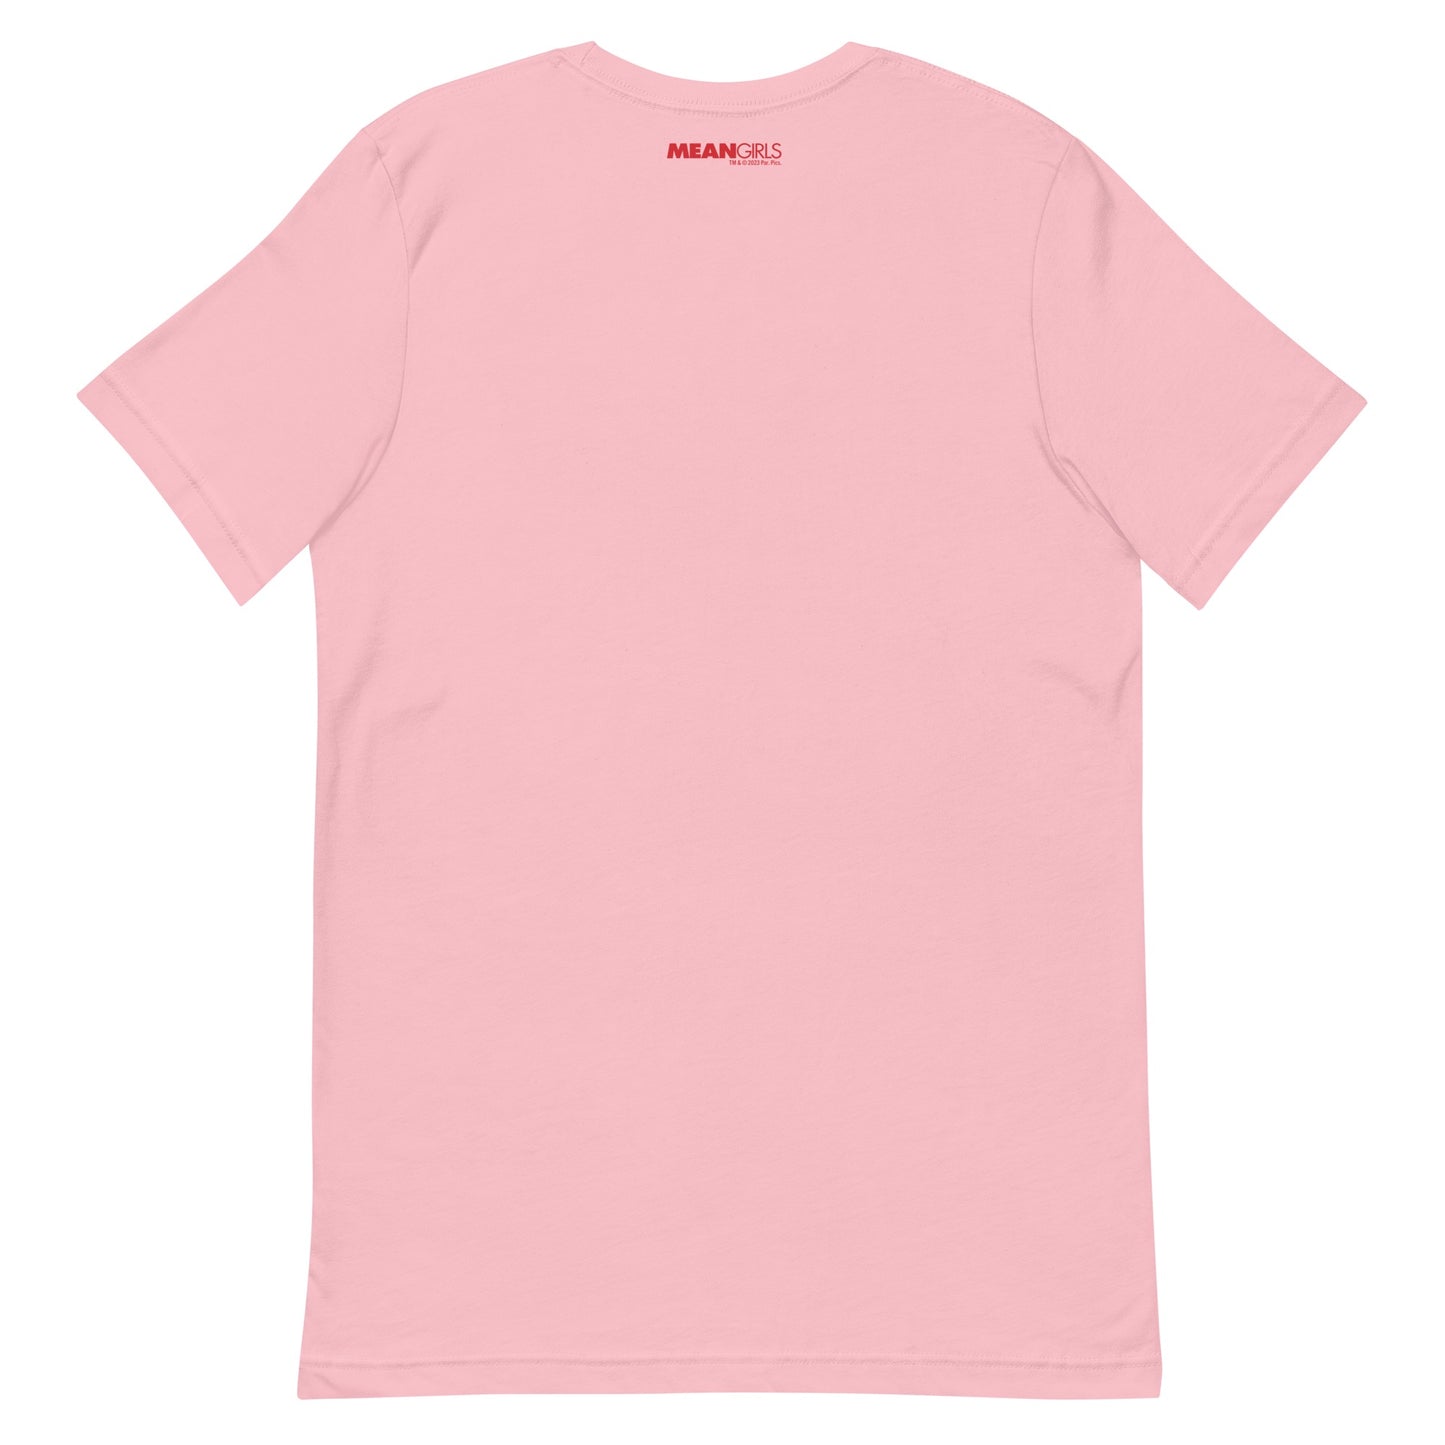 Mean Girls Ein bisschen dramatisch Erwachsene T-Shirt mit kurzen Ärmeln